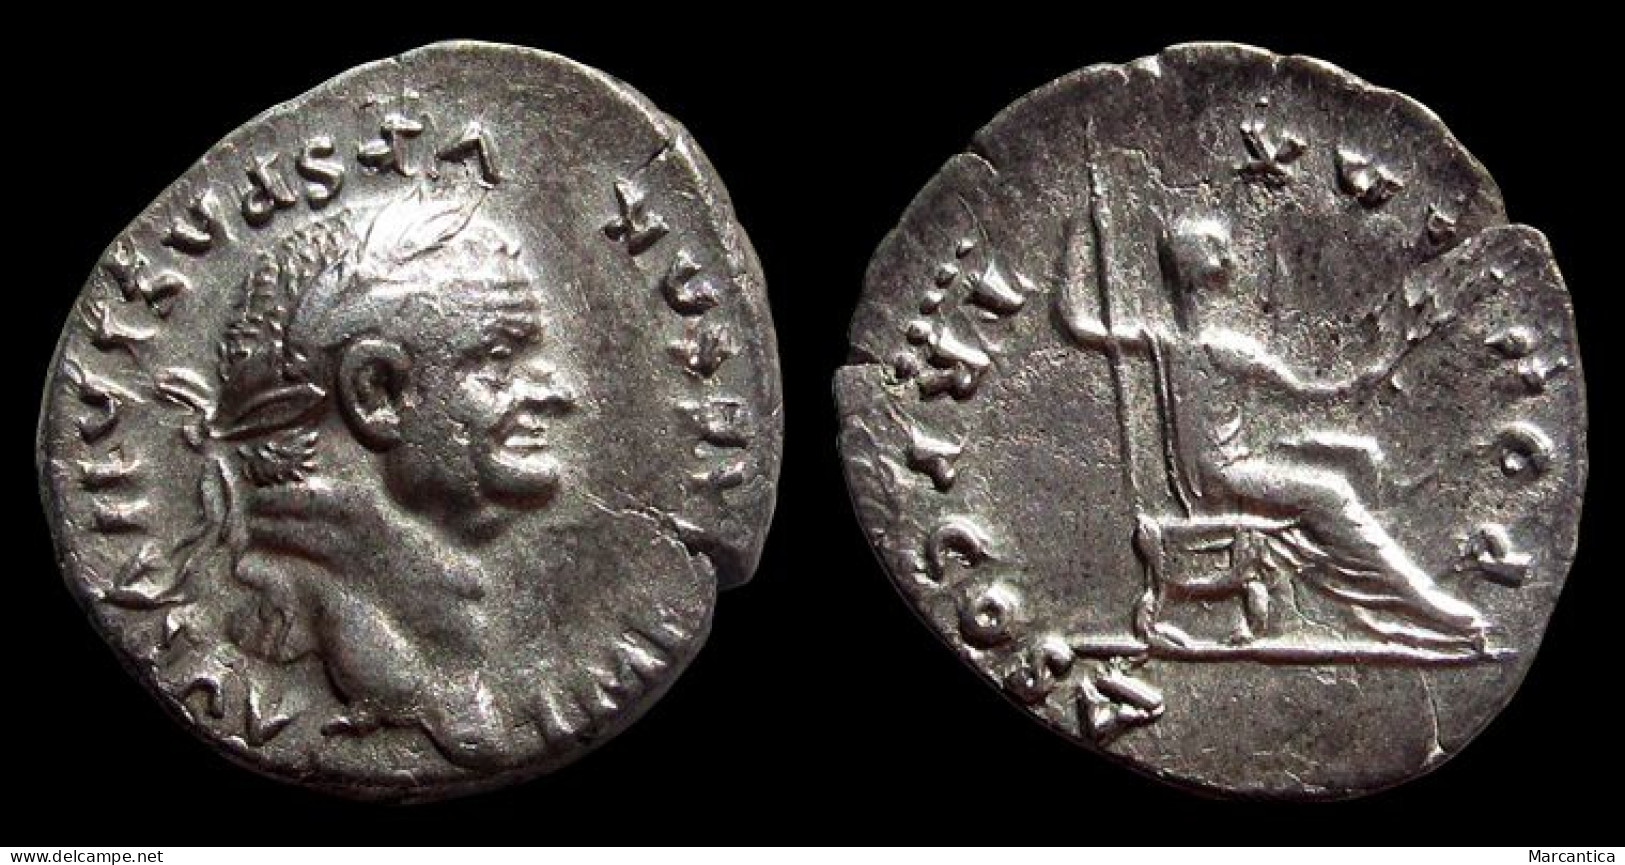 AR Denarius Of Vespasian 69-79 AD., PON MAX TRP COS V - Vespasian As Pontif Maximus, Extremely Fine, RIC II 702 - The Flavians (69 AD To 96 AD)